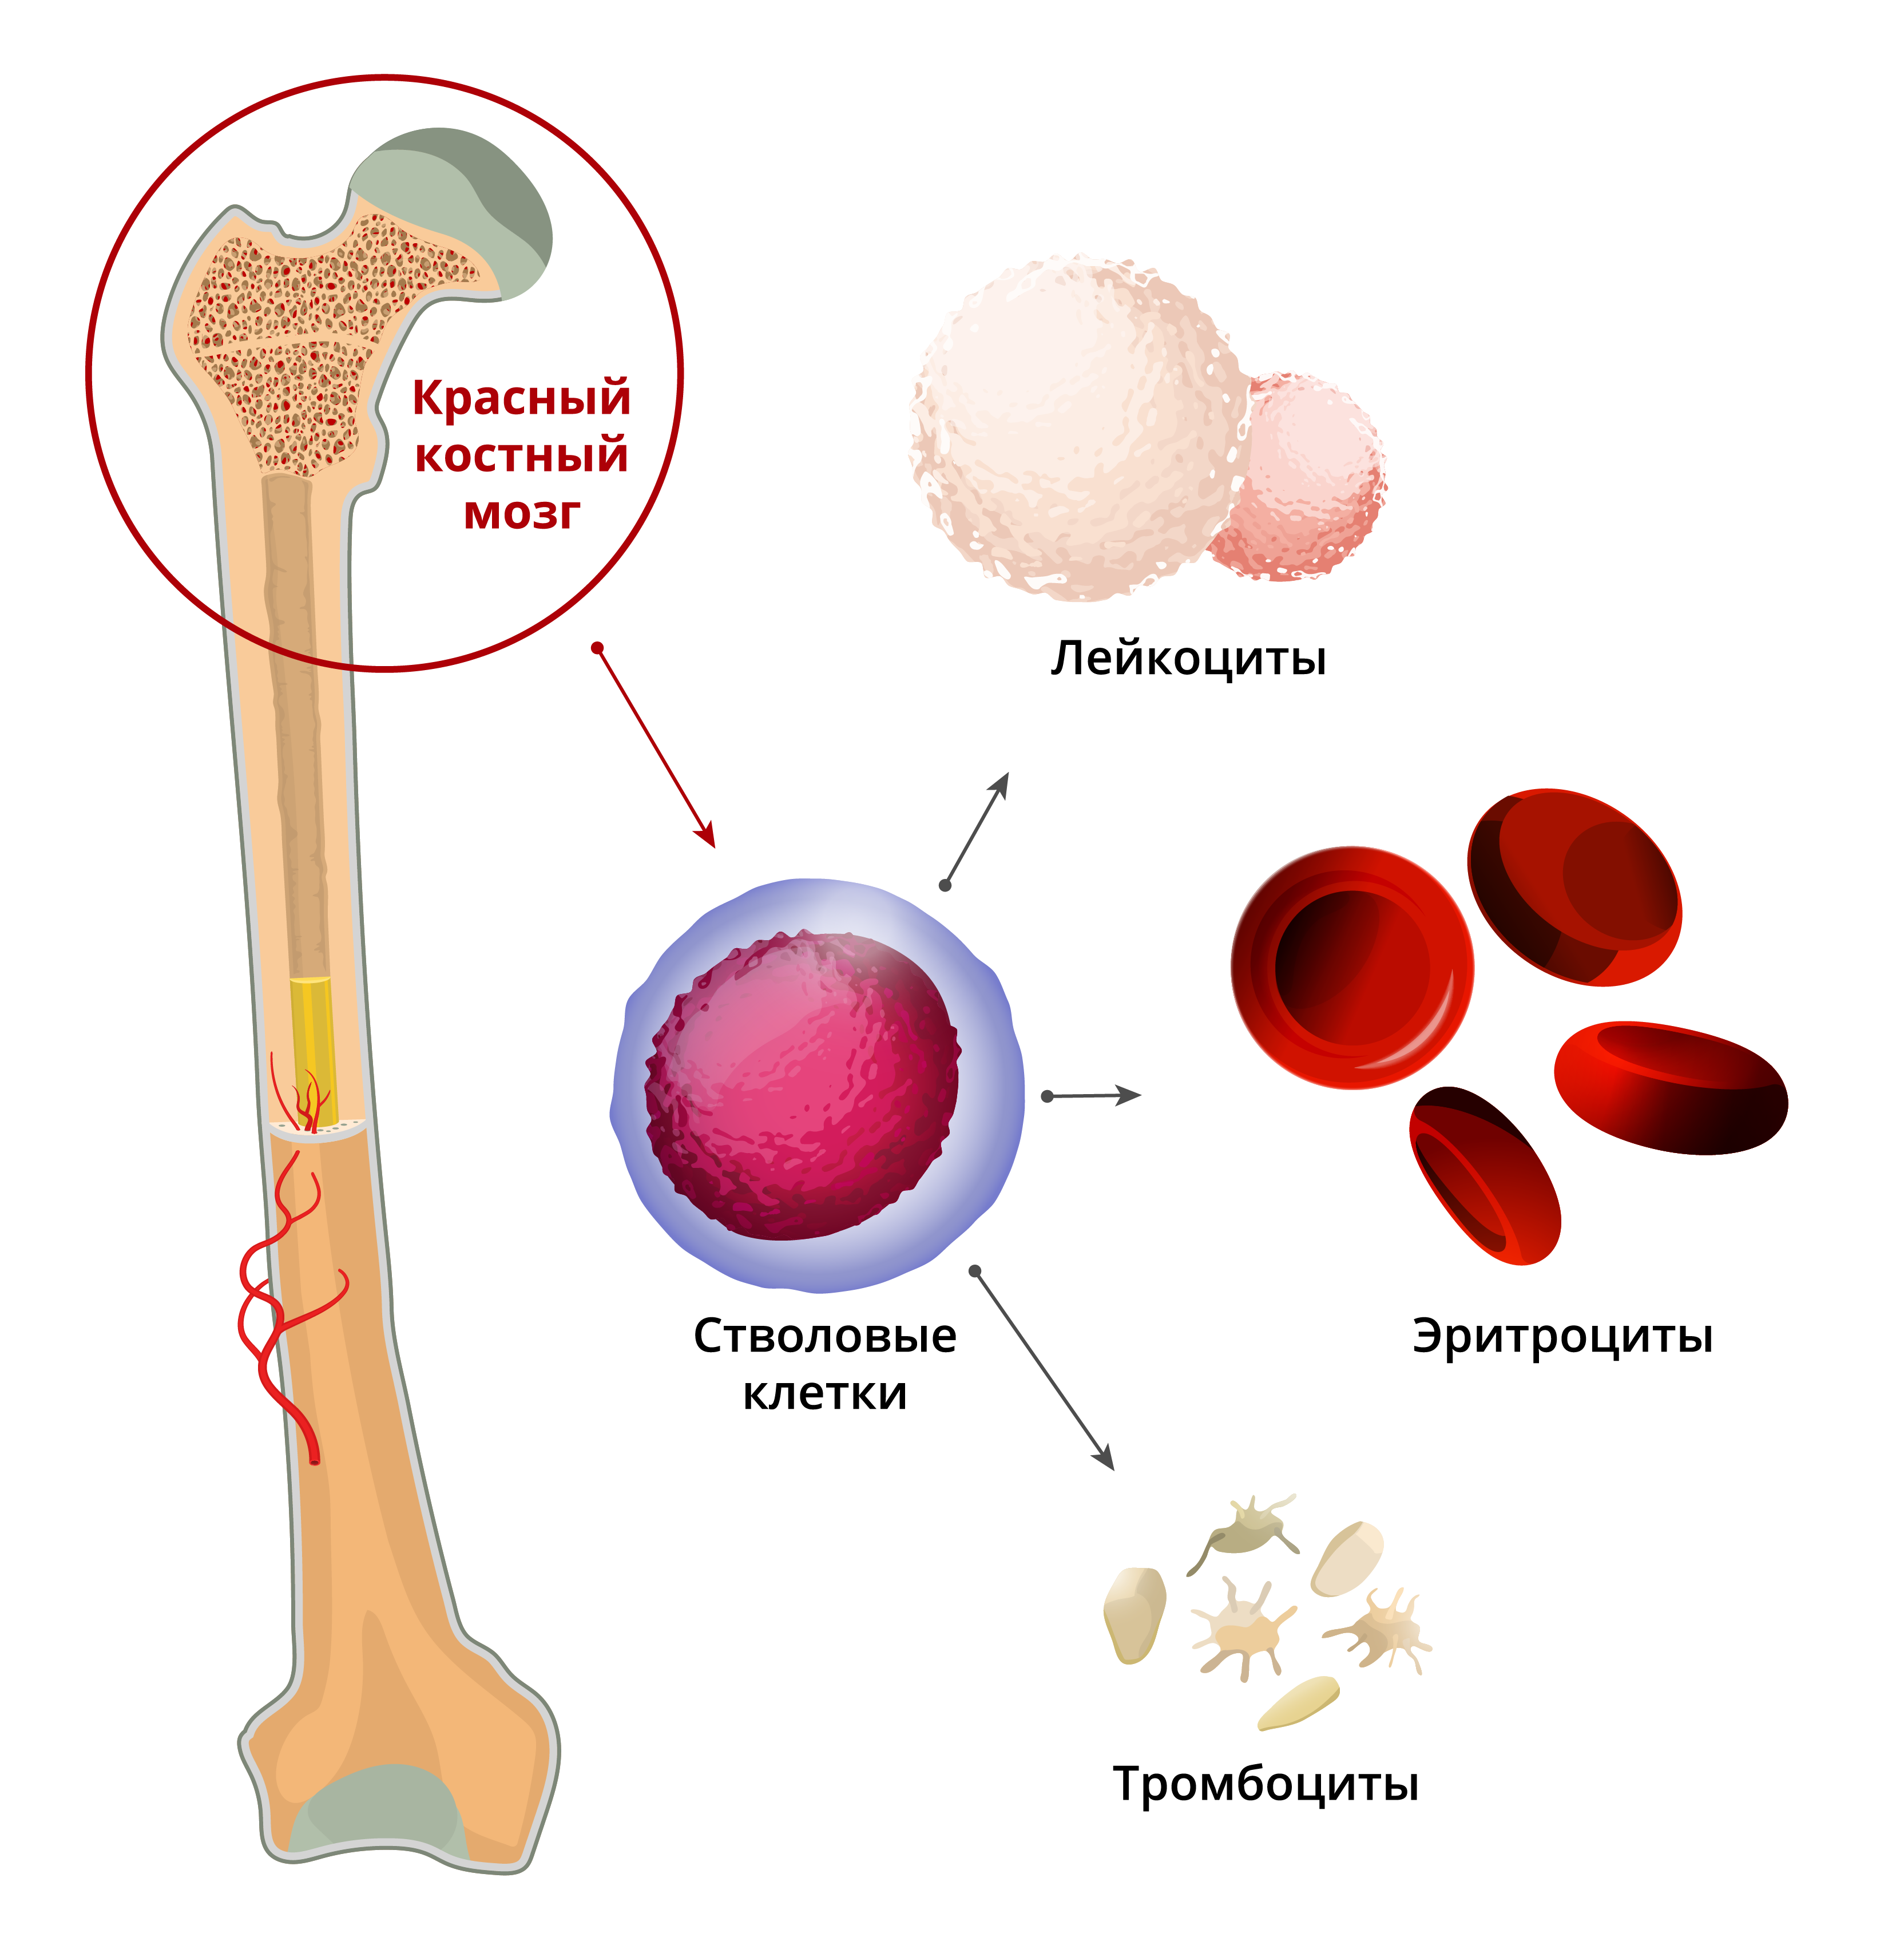 Клетки крови образующийся в костном мозге. Стволовых клеток красного костного мозга:. Гемопоэтические компоненты красного костного мозга. Красный костный мозг анатомические образования. Остеогенные клетки красного костного мозга.